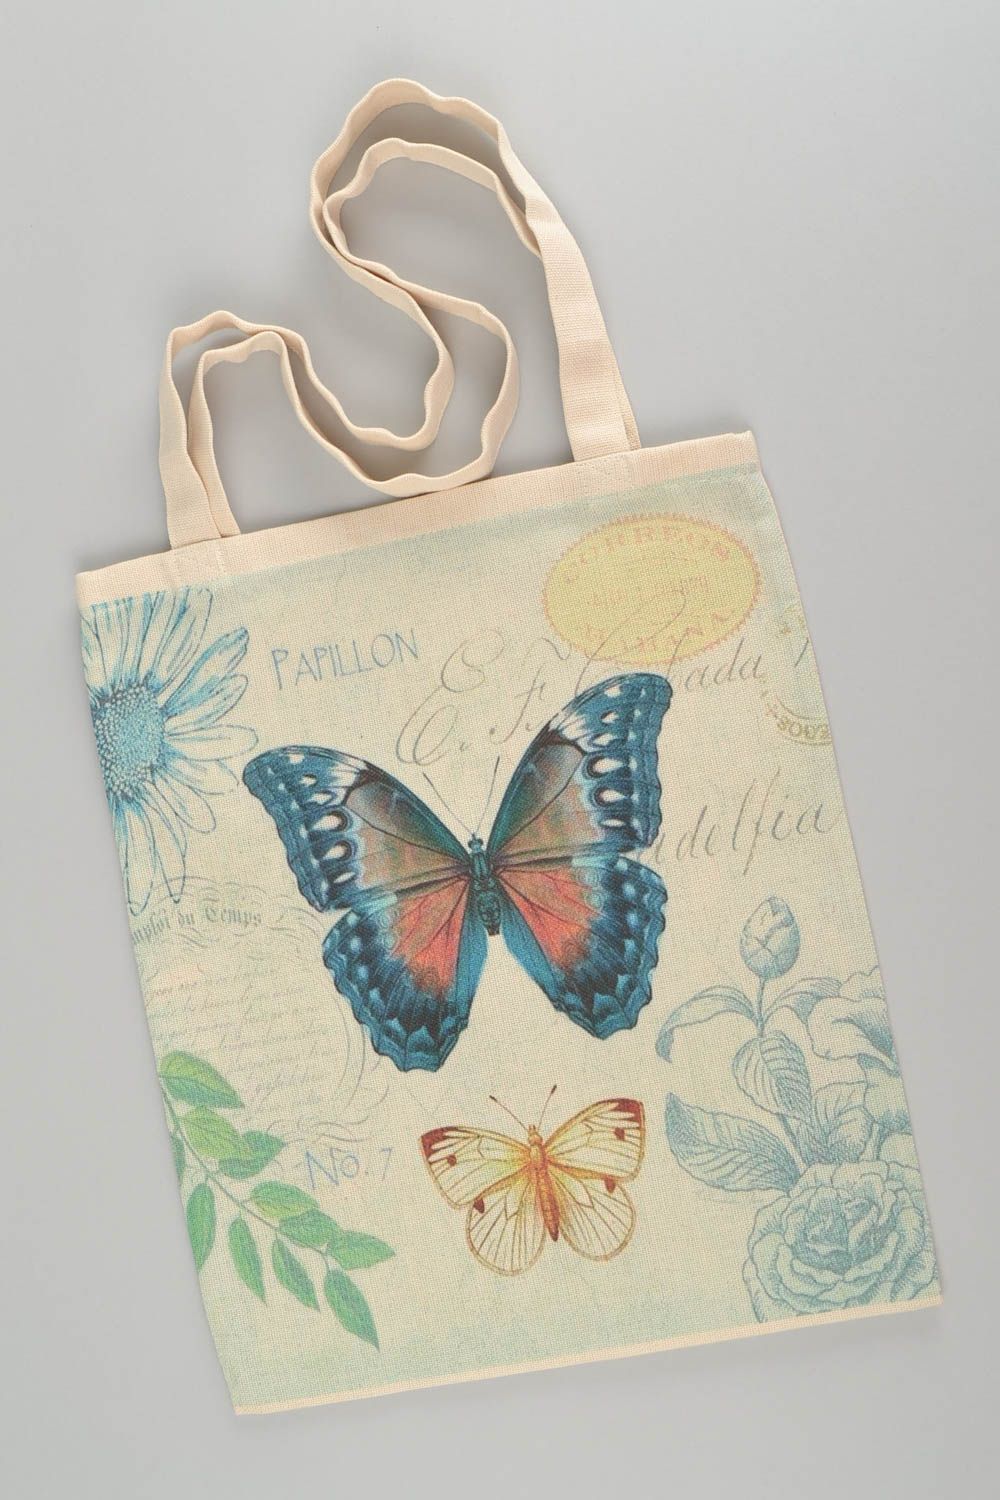 Schöne handgemachte Tasche aus Stoff mit Print von Schmetterlingen für Shopping foto 2